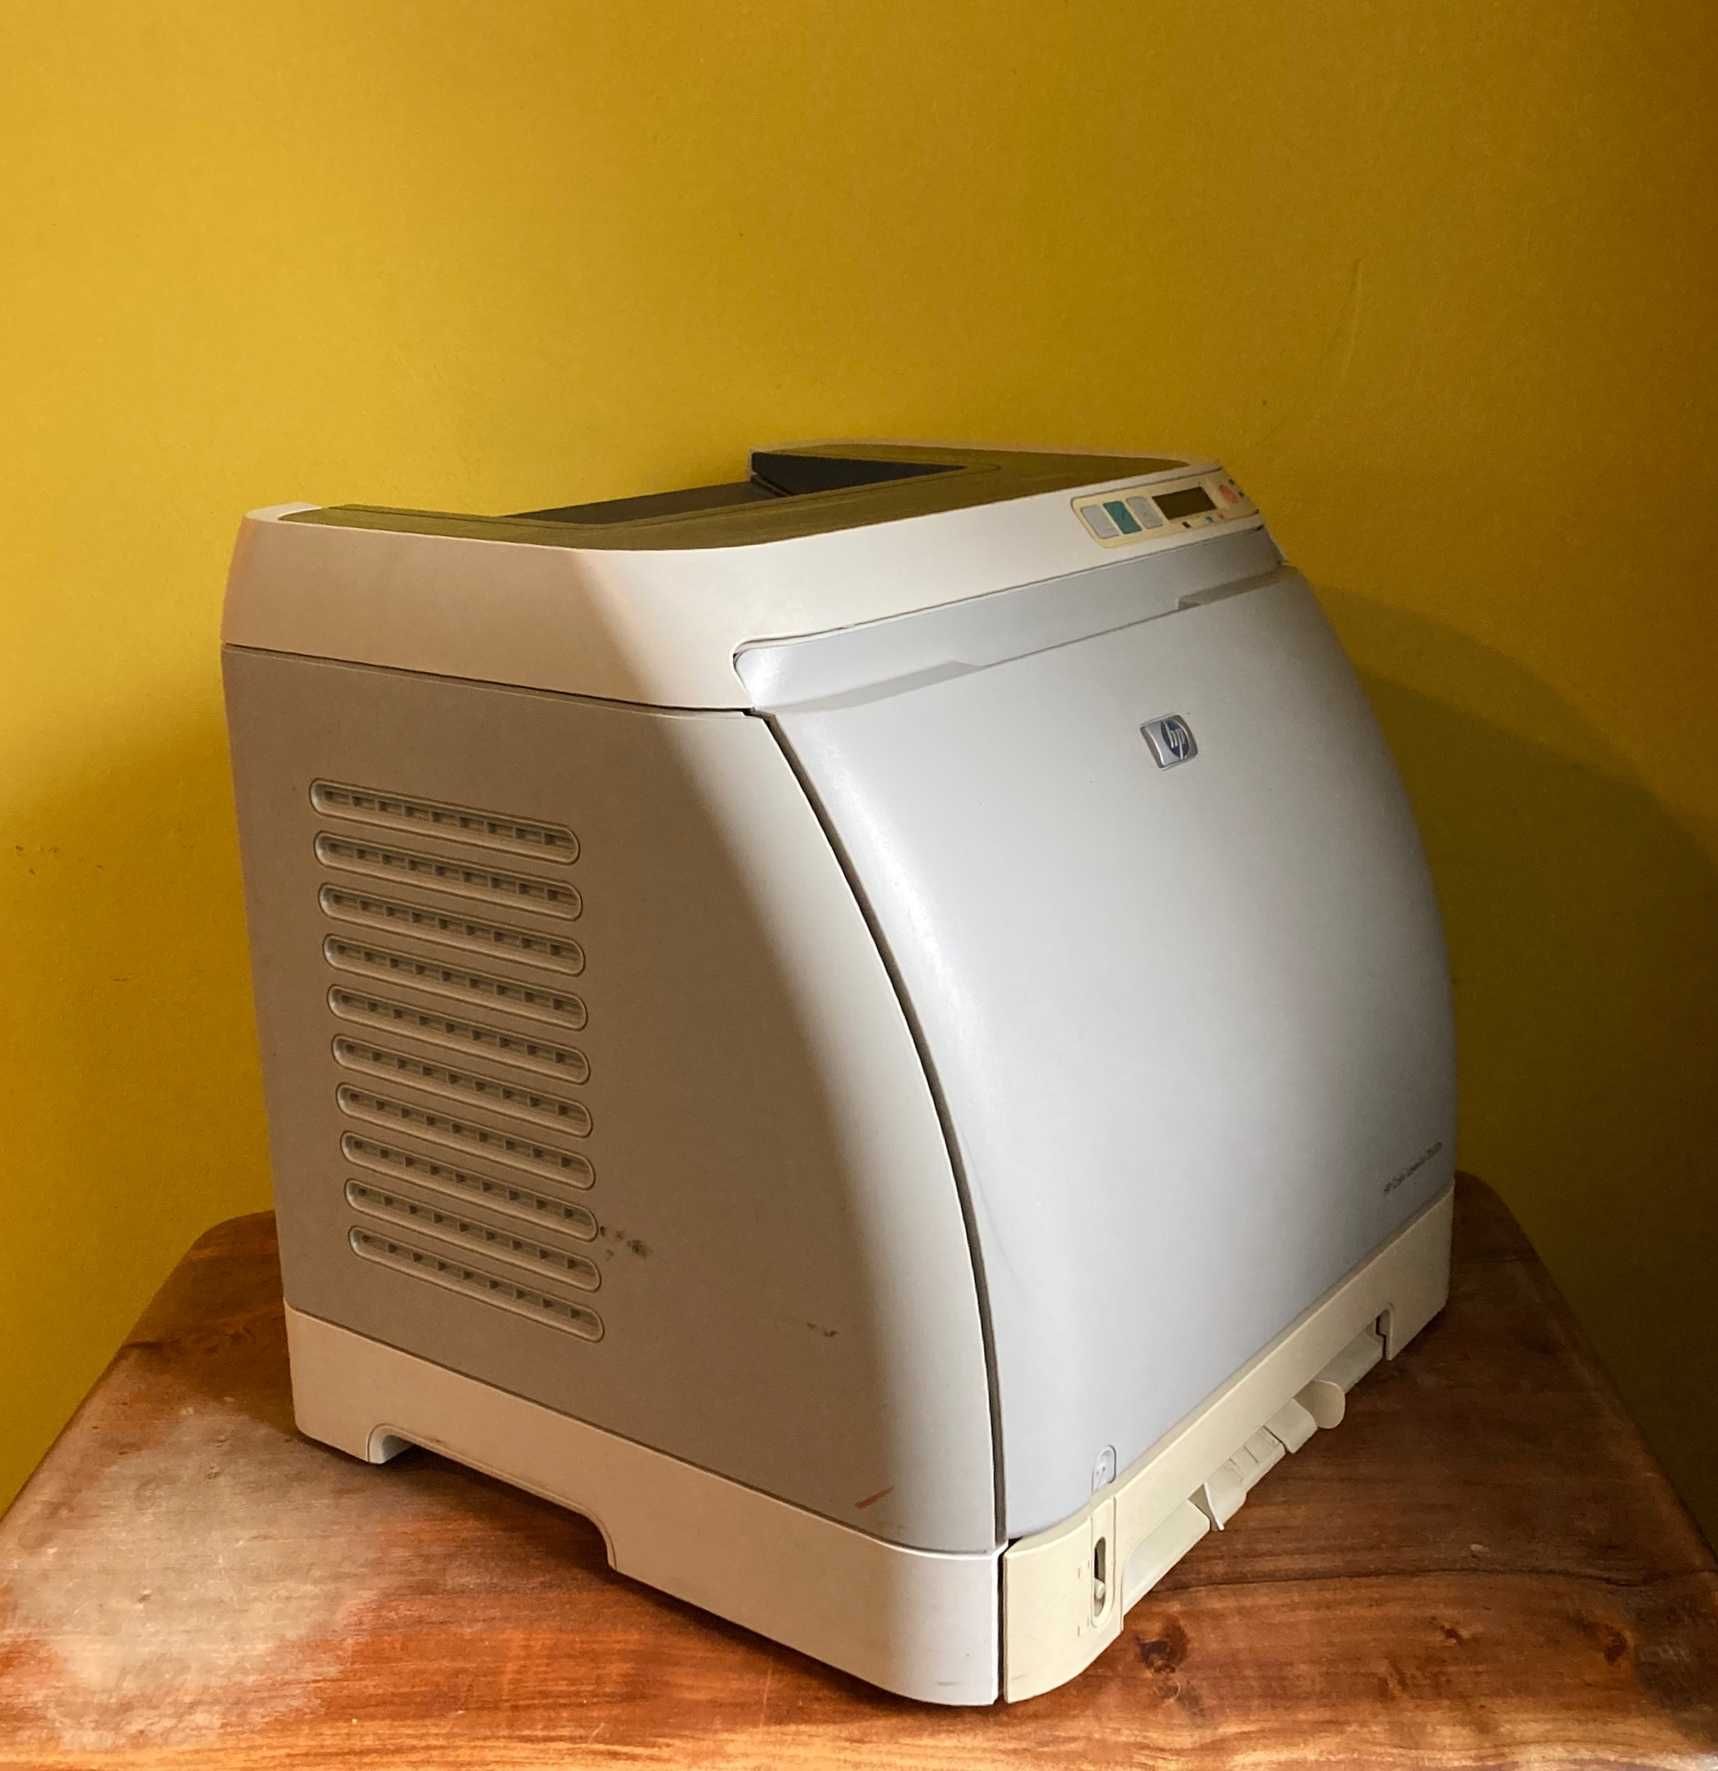 Цветной лазерный принтер HP Color LaserJet 2600n